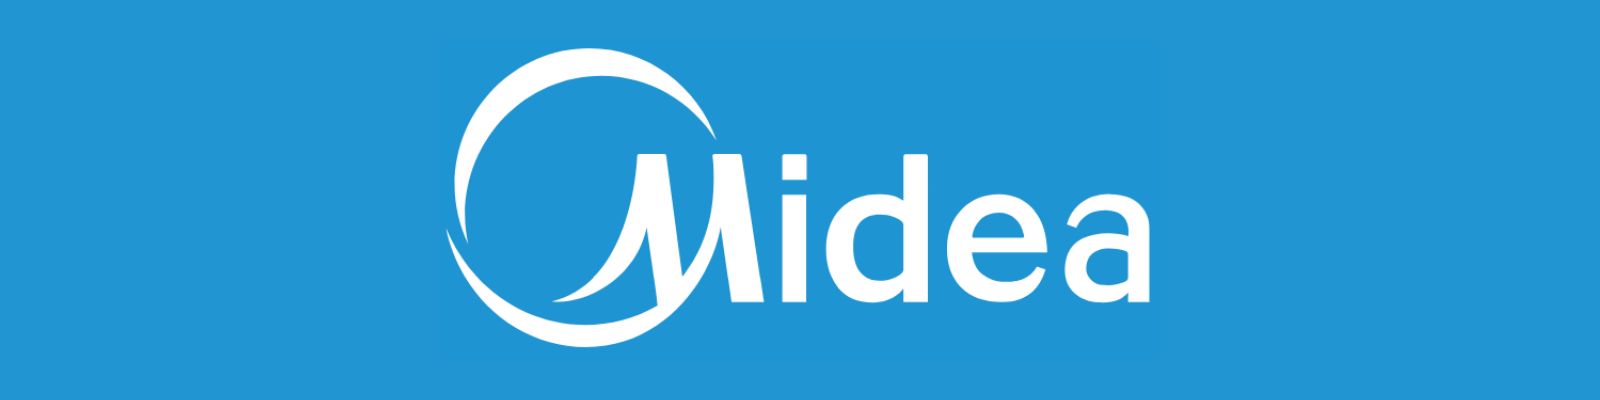 WhatsApp Midea Store: Conheça os melhores Canais de atendimento!